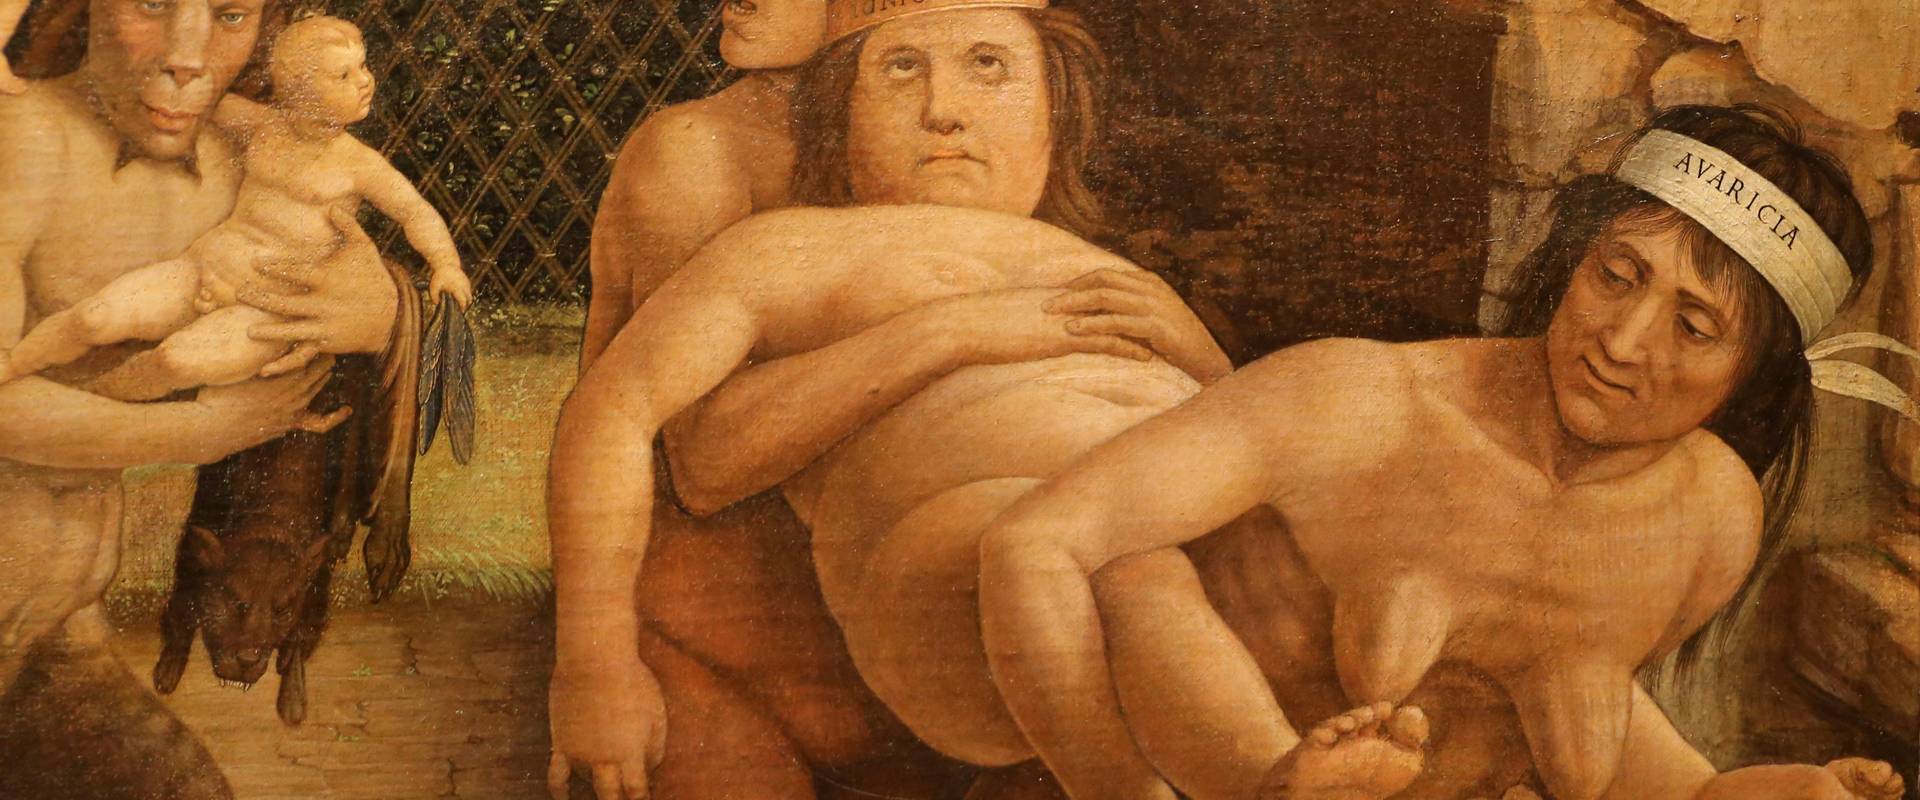 Andrea mantegna, minerva scaccia i vizi dal giardino delle virtù, 1497-1502 ca. (louvre) 37 foto di Sailko